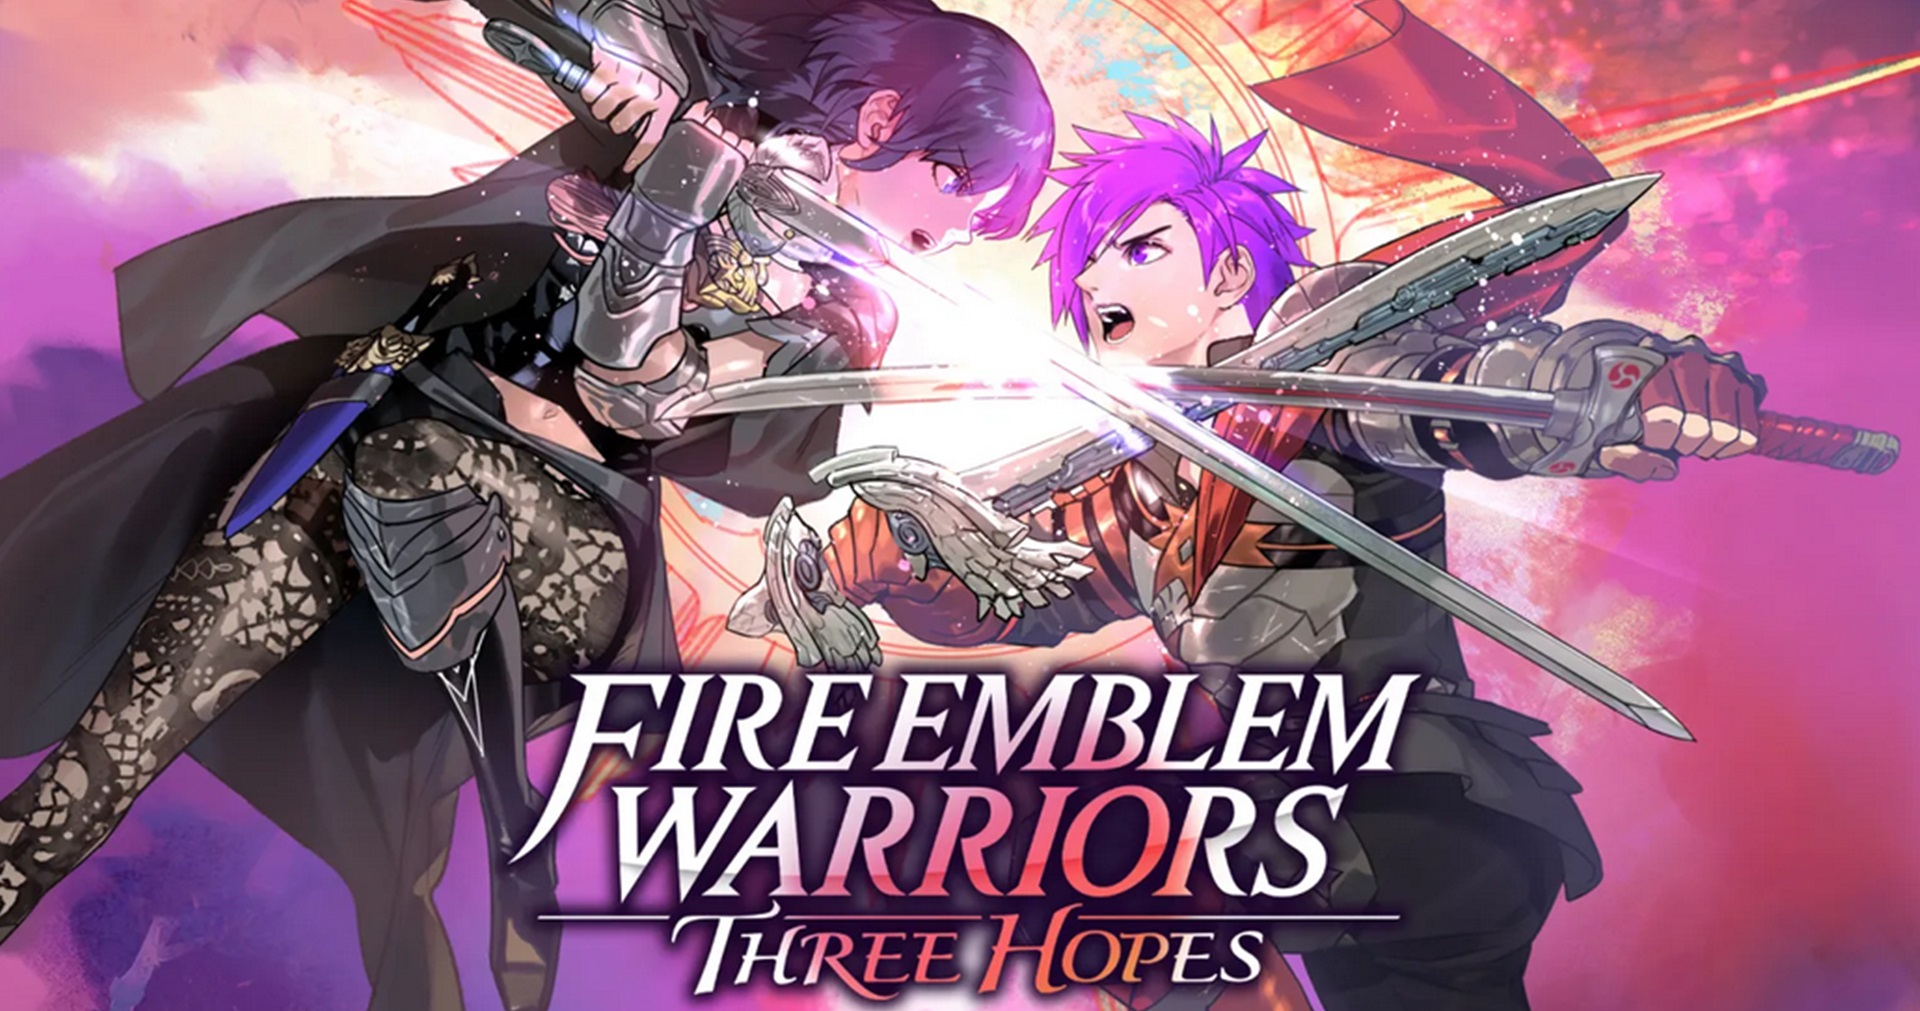 เกม Fire Emblem Warriors: Three Hopes จะเป็นเรื่องราวใหม่ไม่เกี่ยวกับภาค Three Houses